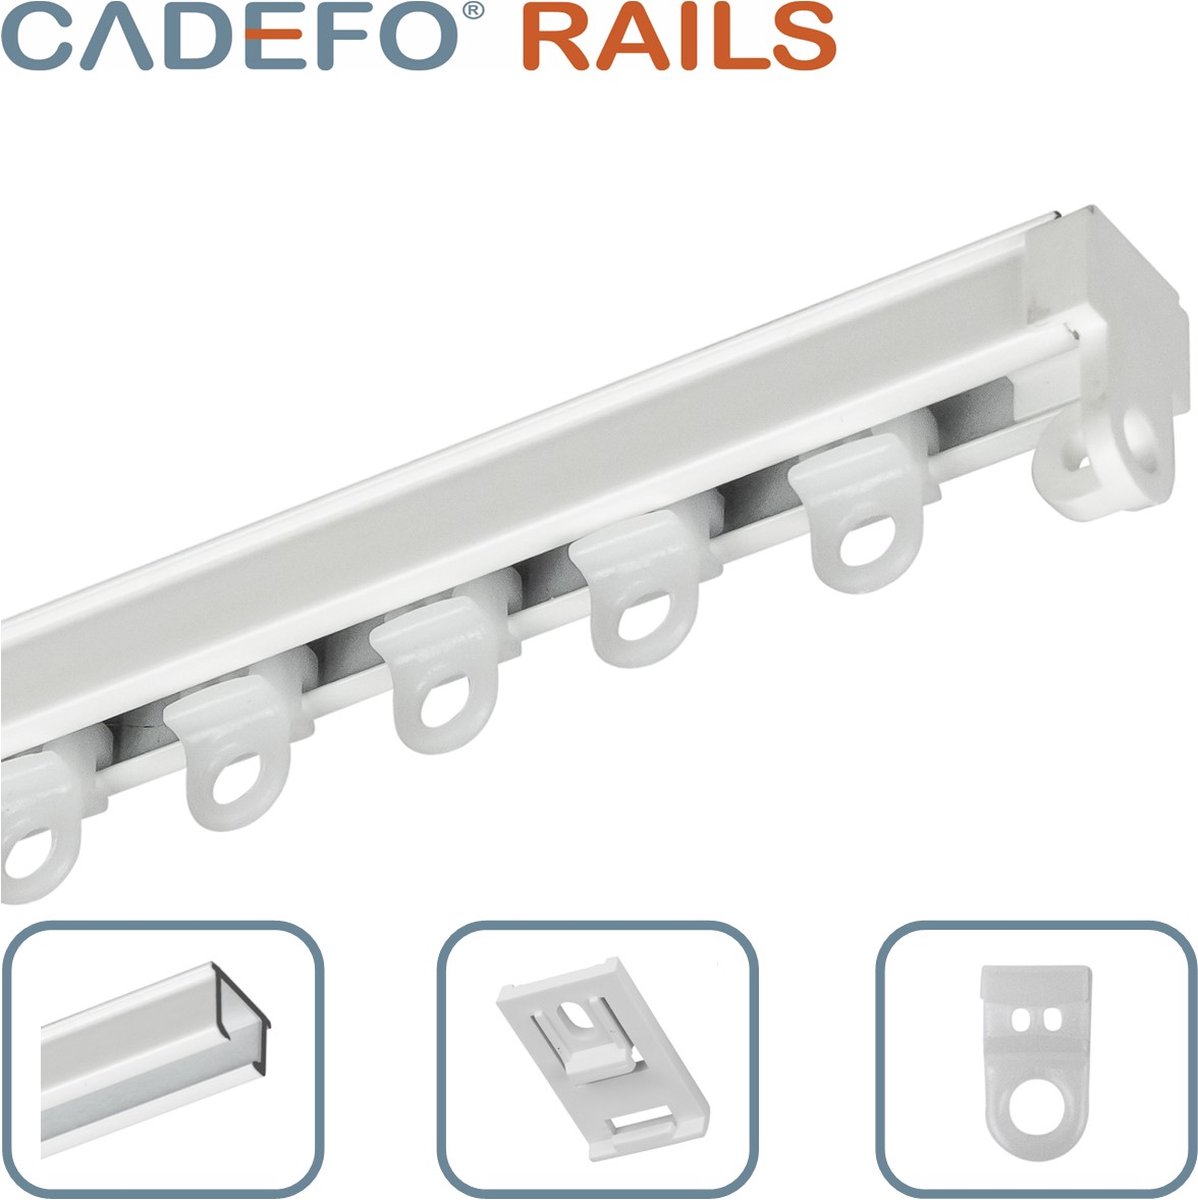 CADEFO RAILS (201 - 250 cm) Gordijnrails - Compleet op maat! - UIT 1 STUK - Leverbaar tot 6 meter - Plafondbevestiging - Lengte 230 cm